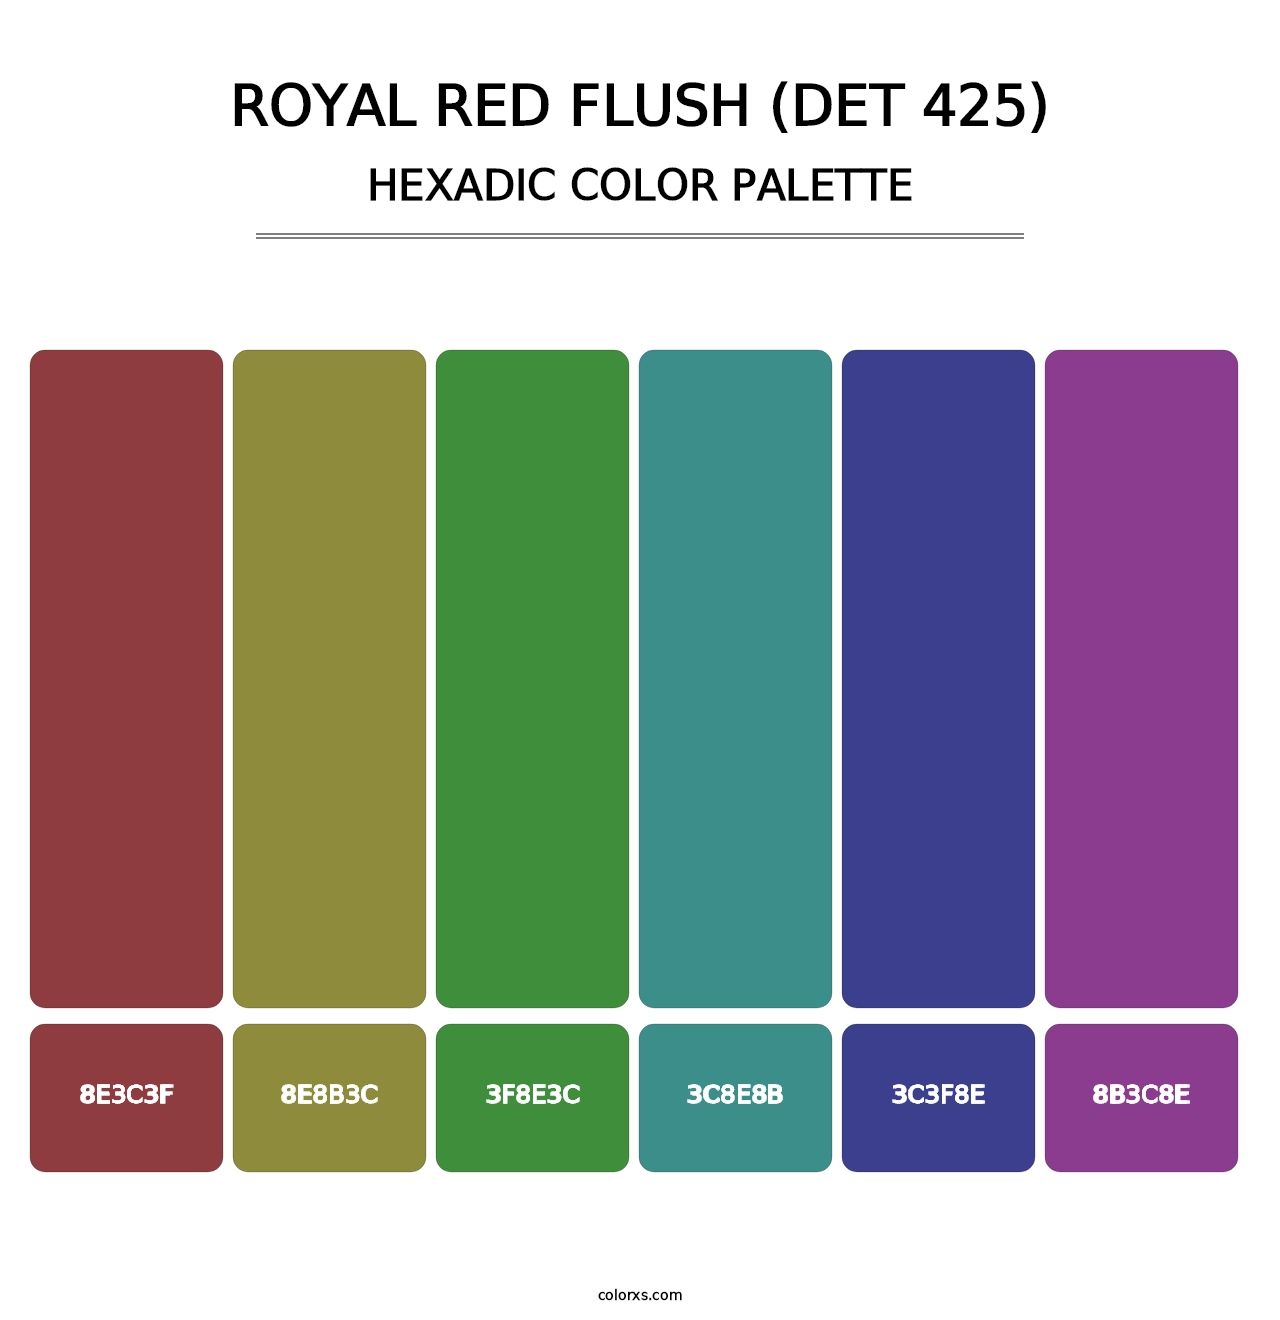 Royal Red Flush (DET 425) - Hexadic Color Palette